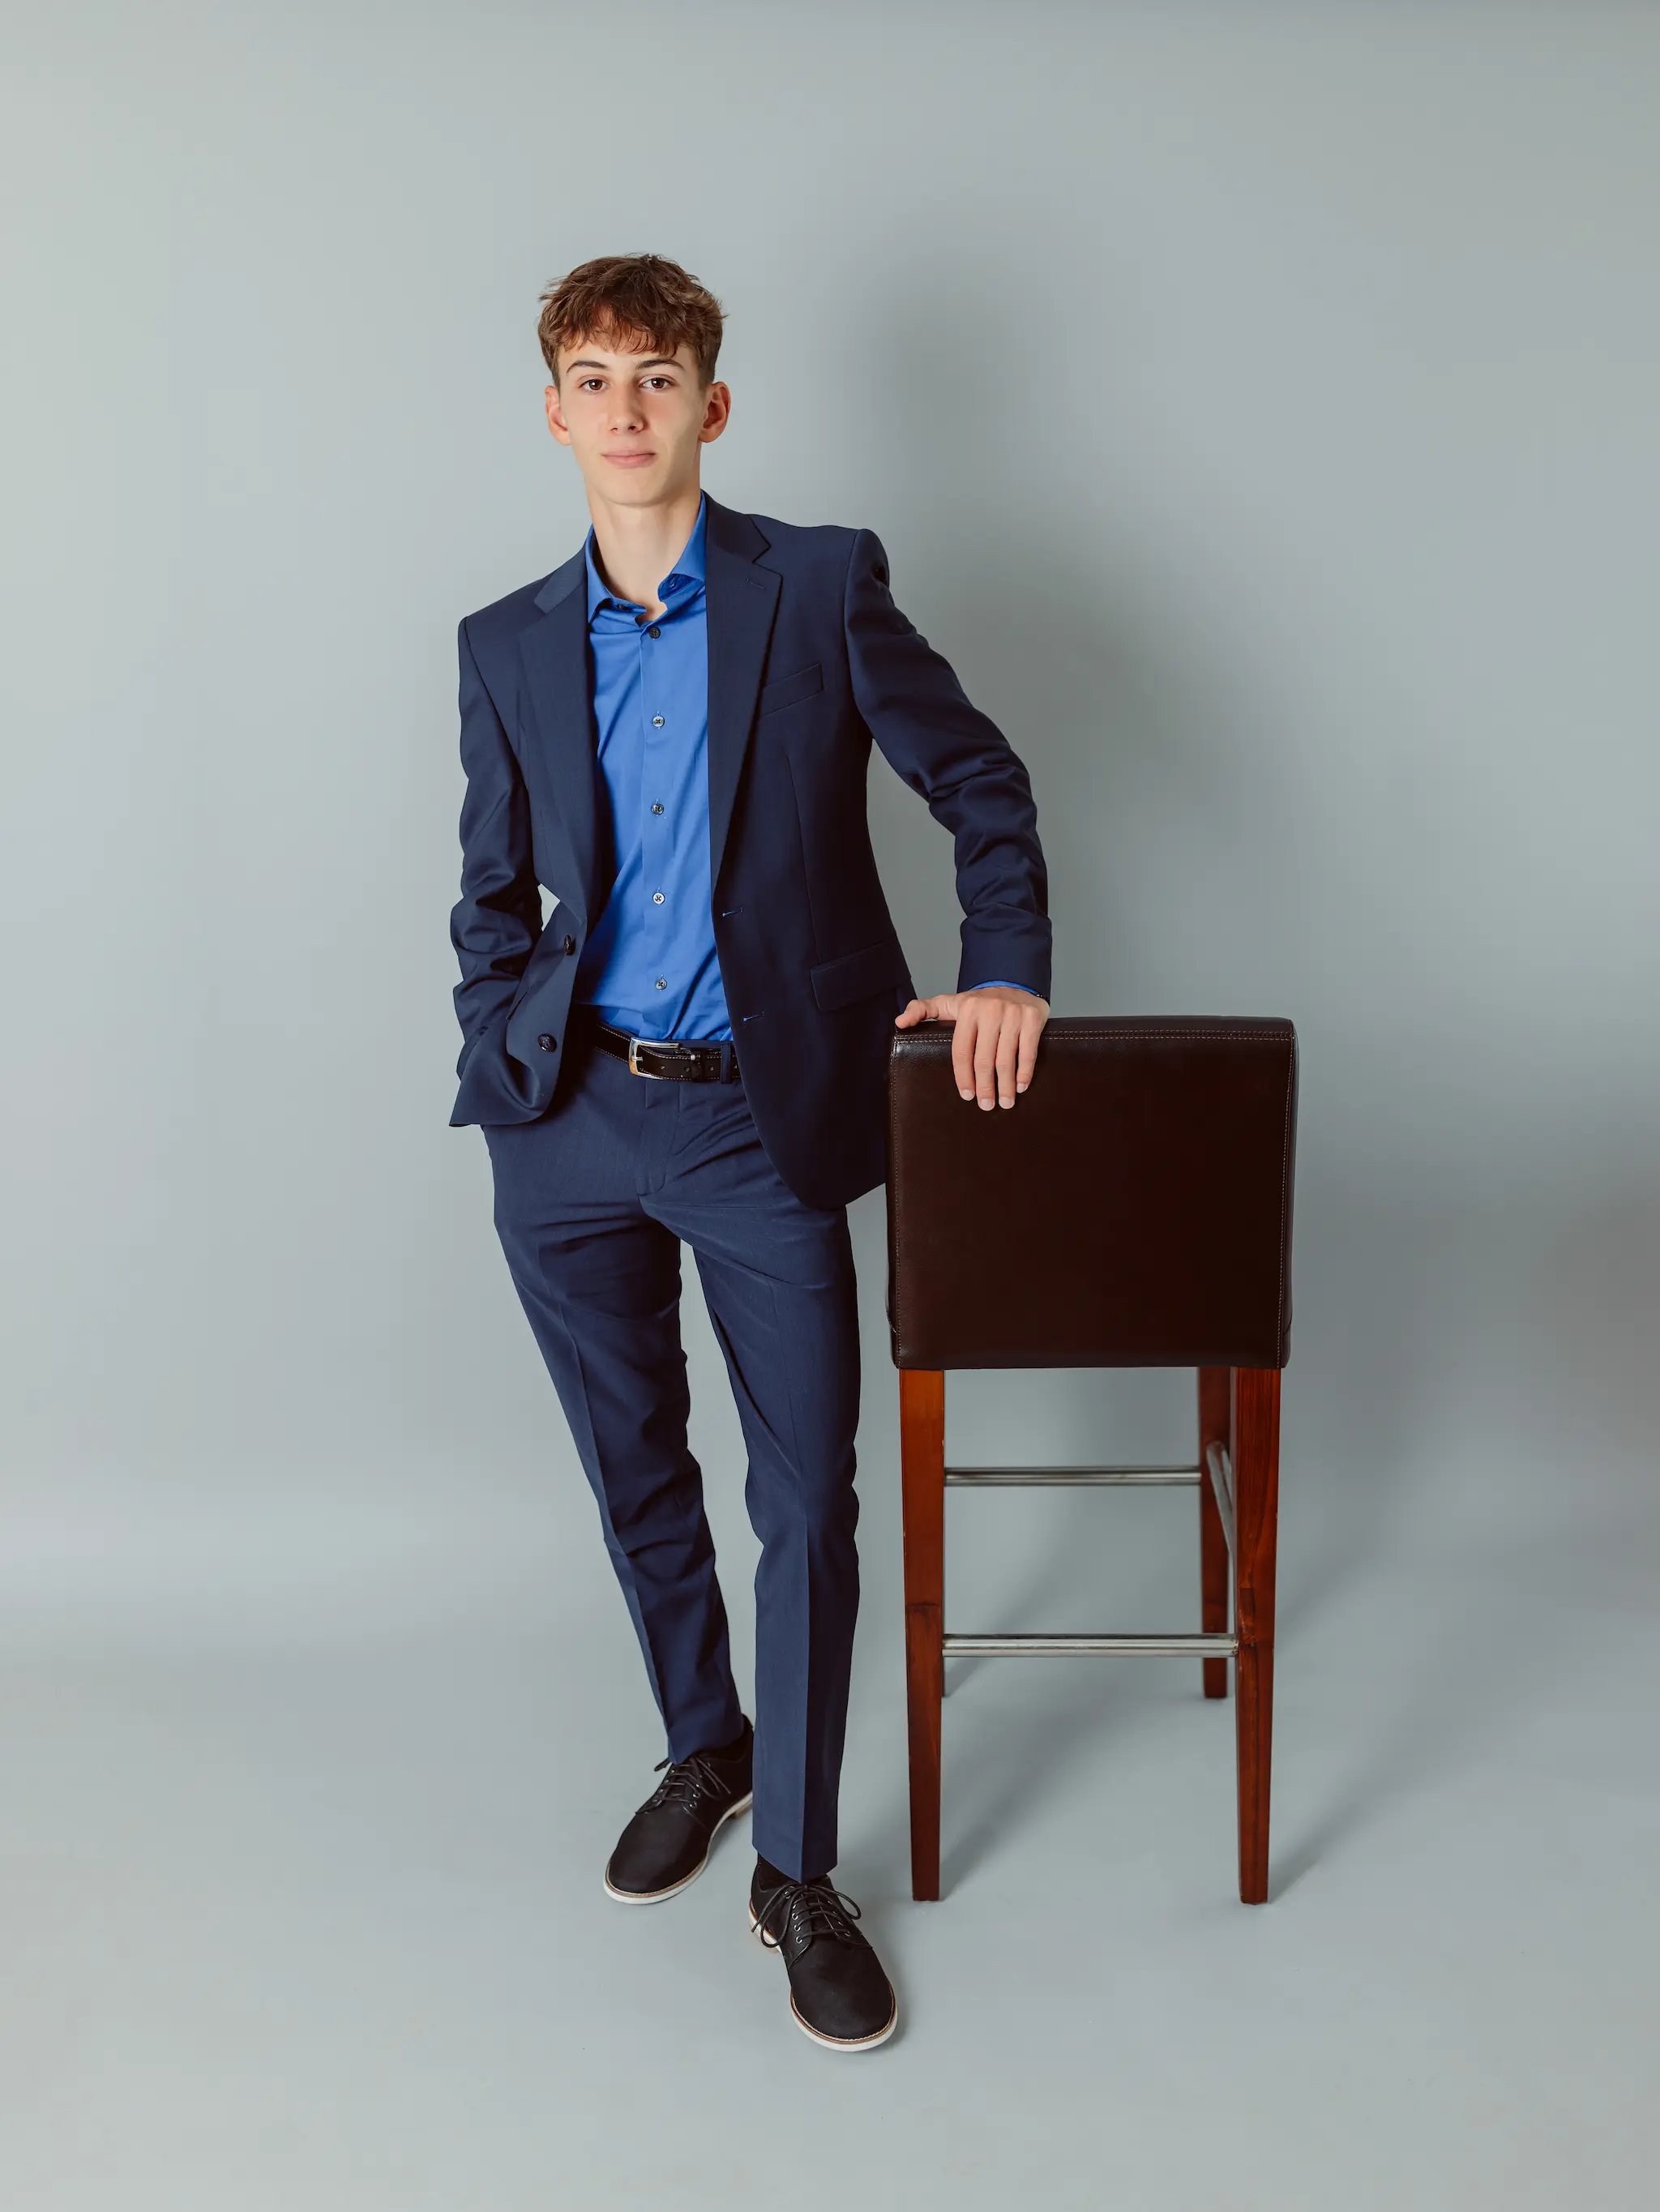 senior-portrait-teen-boy-blue-suit